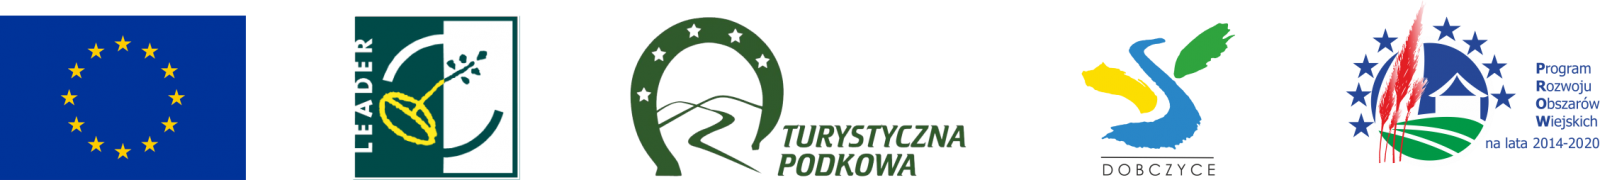 pasek z logotypami, od lewej: symbol Unii Europejskiej, Programu Leader, logo Turystycznej Podkowy, logo Gminy Dobczyce oraz logo Programu Rozwoju Obszarów Wiejskich na lata 2014-2020